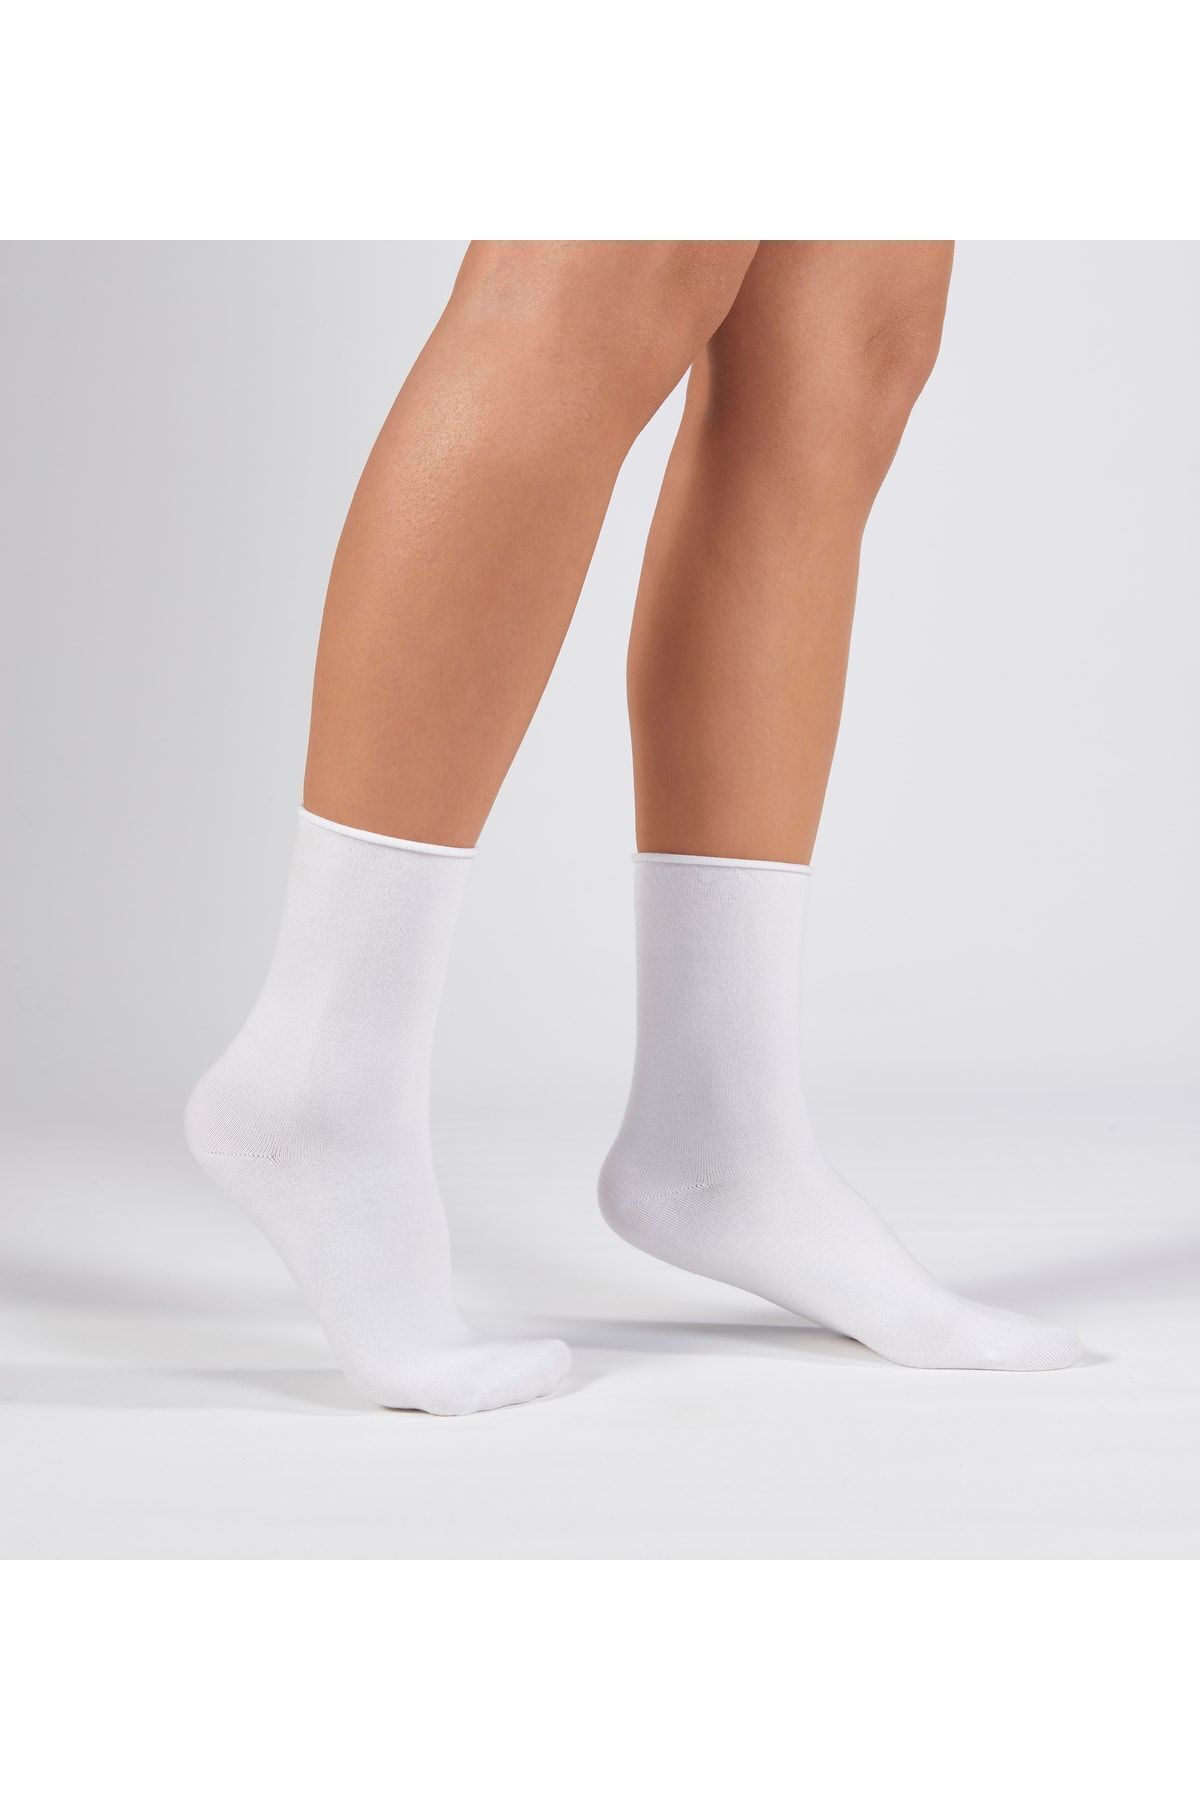 Forwena 3’lü Paket Beyaz Modal Lastiksiz Dikişsiz Kadın Soket Çorap